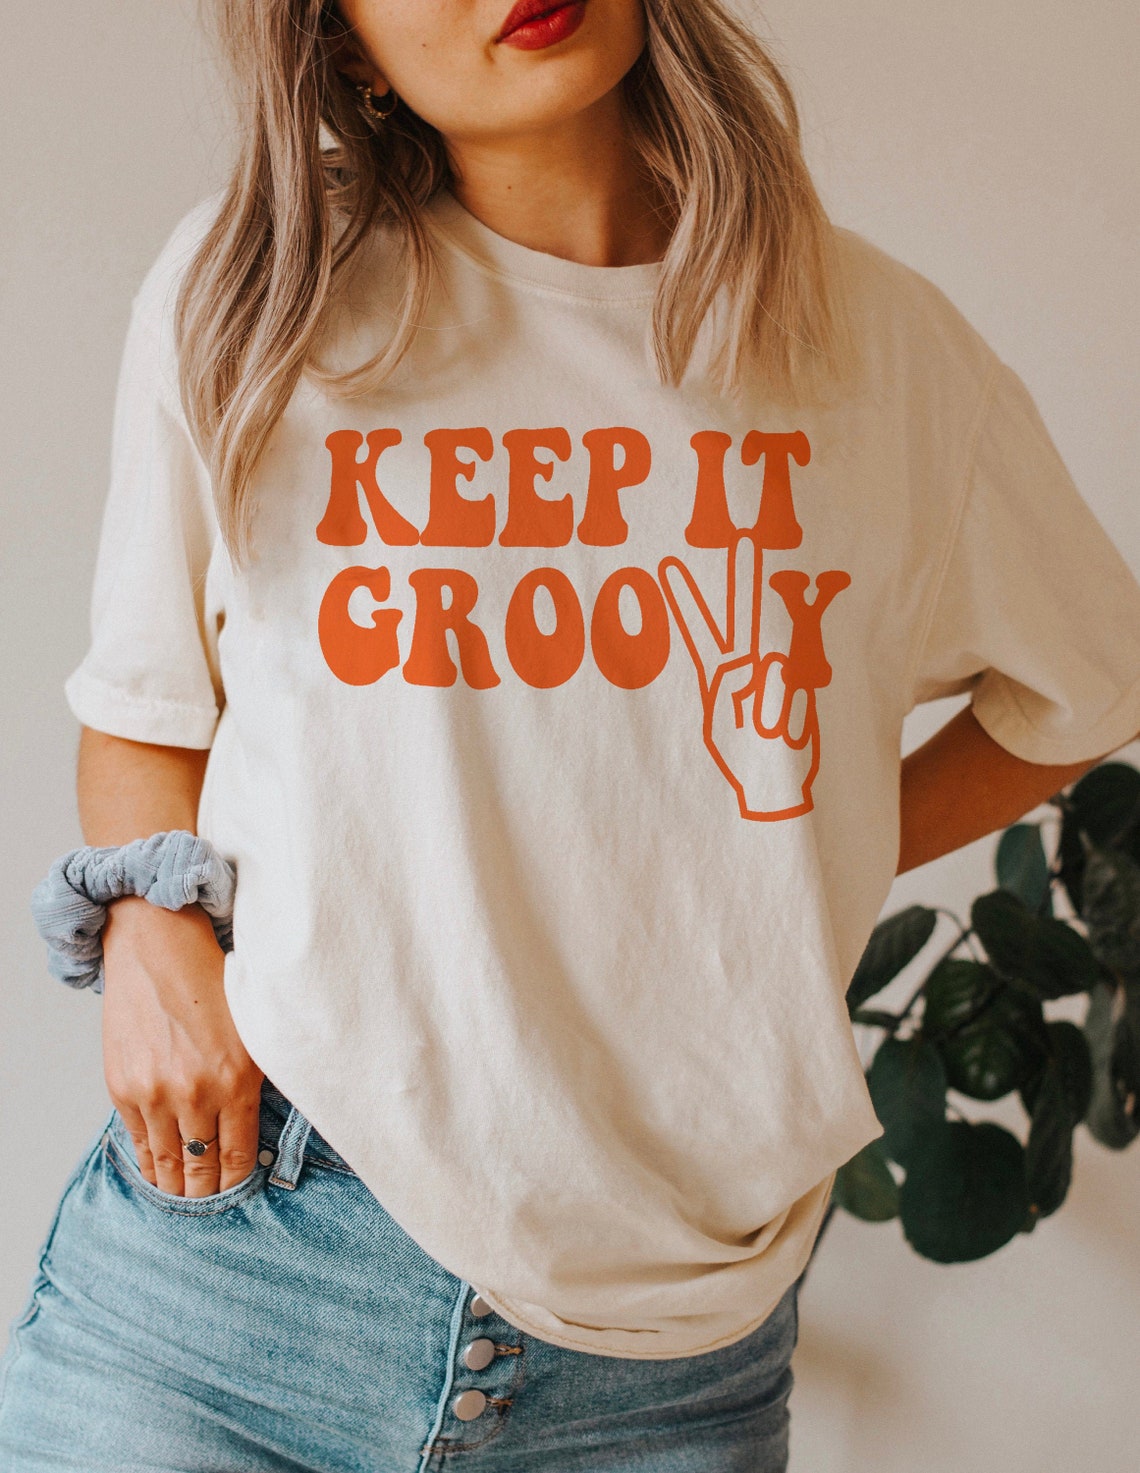 Keep It Groovy Tee Keep It Groovy T-shirt Hippie Tee Vintage - Etsy